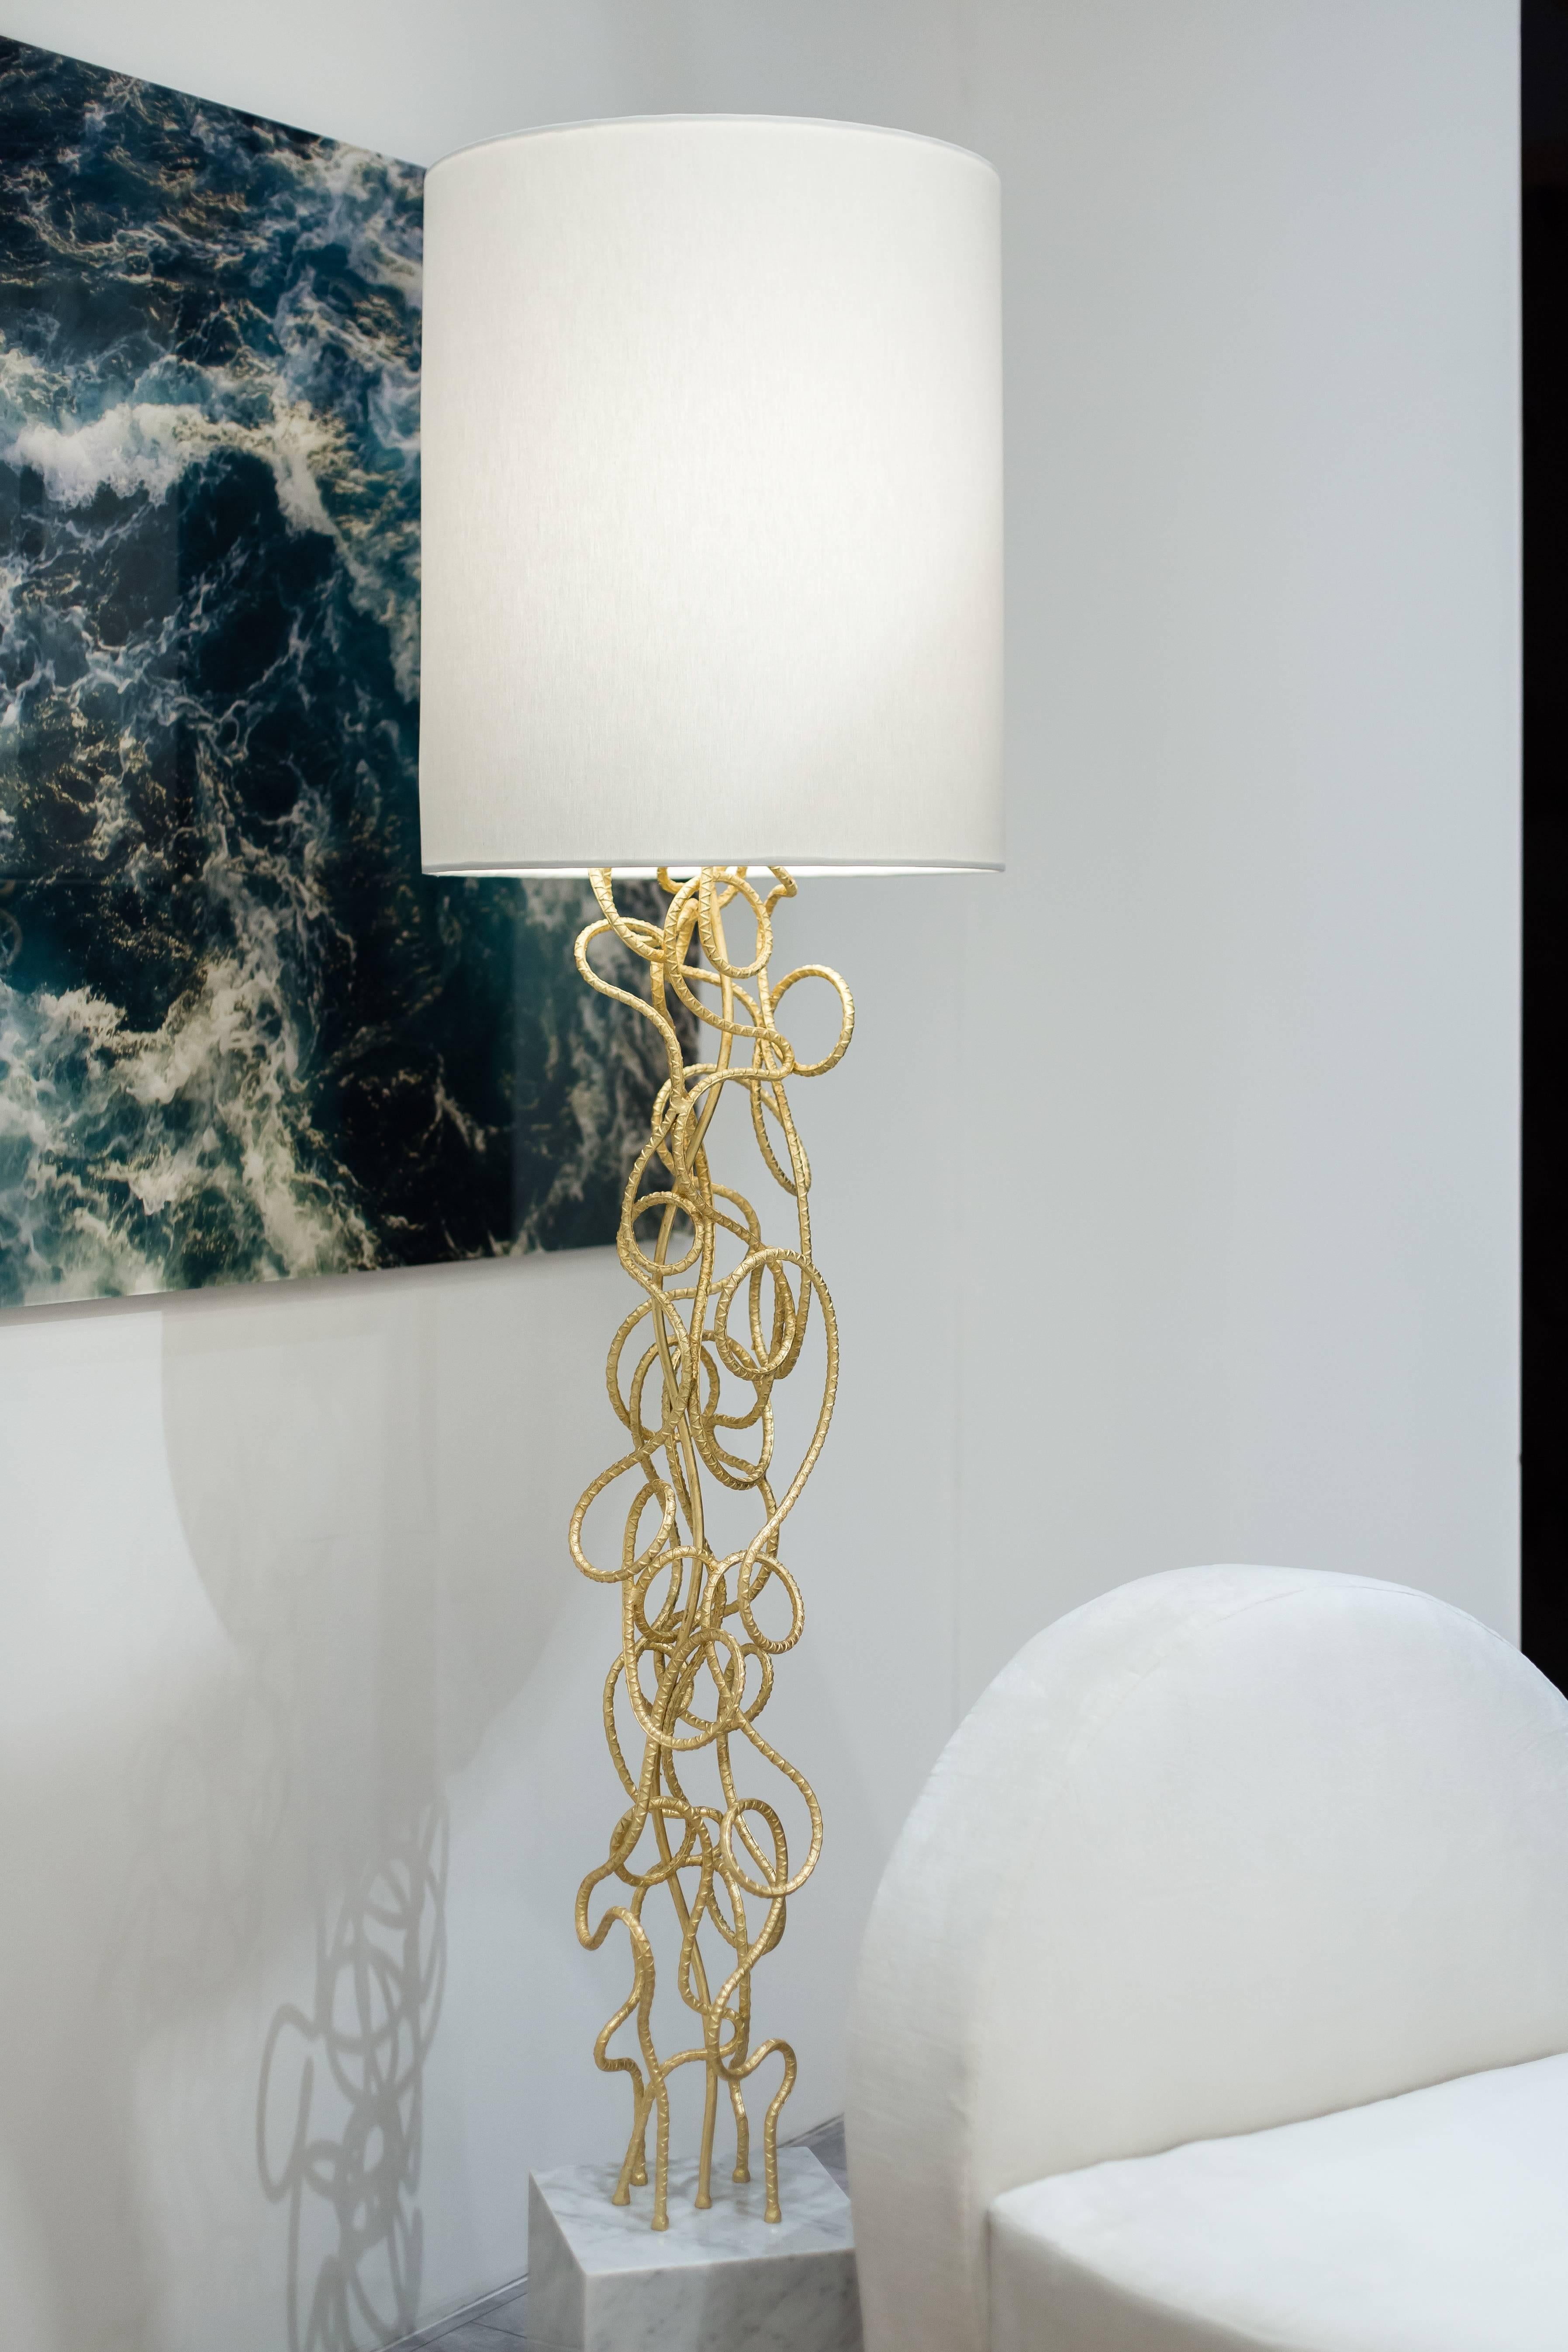 LAMPE DE SOL DAX - Lampe de sol moderne à barre torsadée en feuille d'or avec base en marbre de Carrare

Le lampadaire Dax est une œuvre d'art étonnante conçue pour créer une déclaration sculpturale dans n'importe quelle pièce. Il est fabriqué à